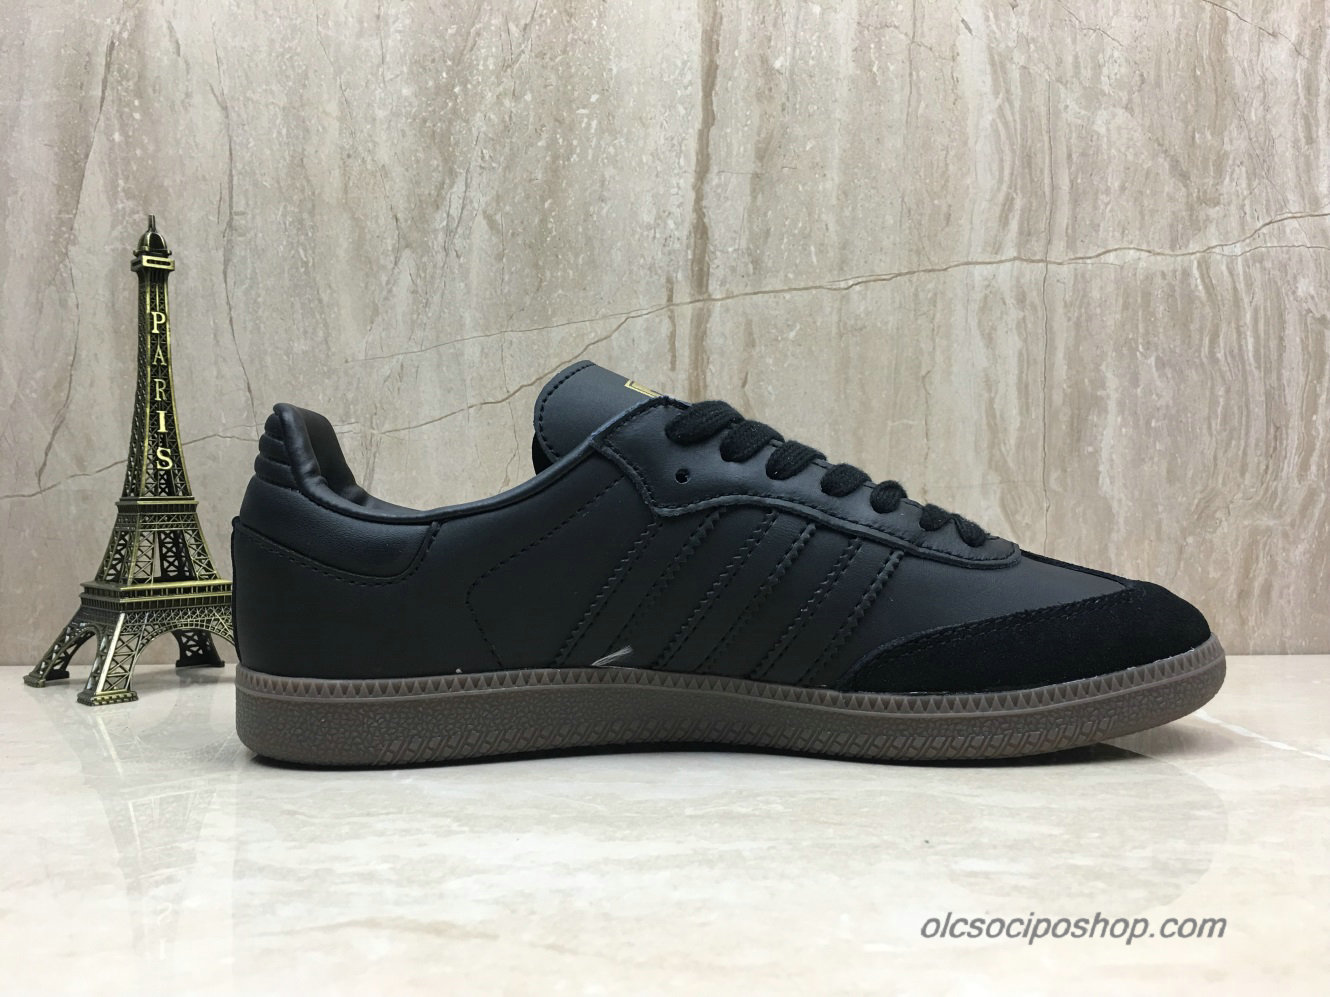 Adidas Samba OG Fekete/Arany Cipők (B75805) - Kattintásra bezárul